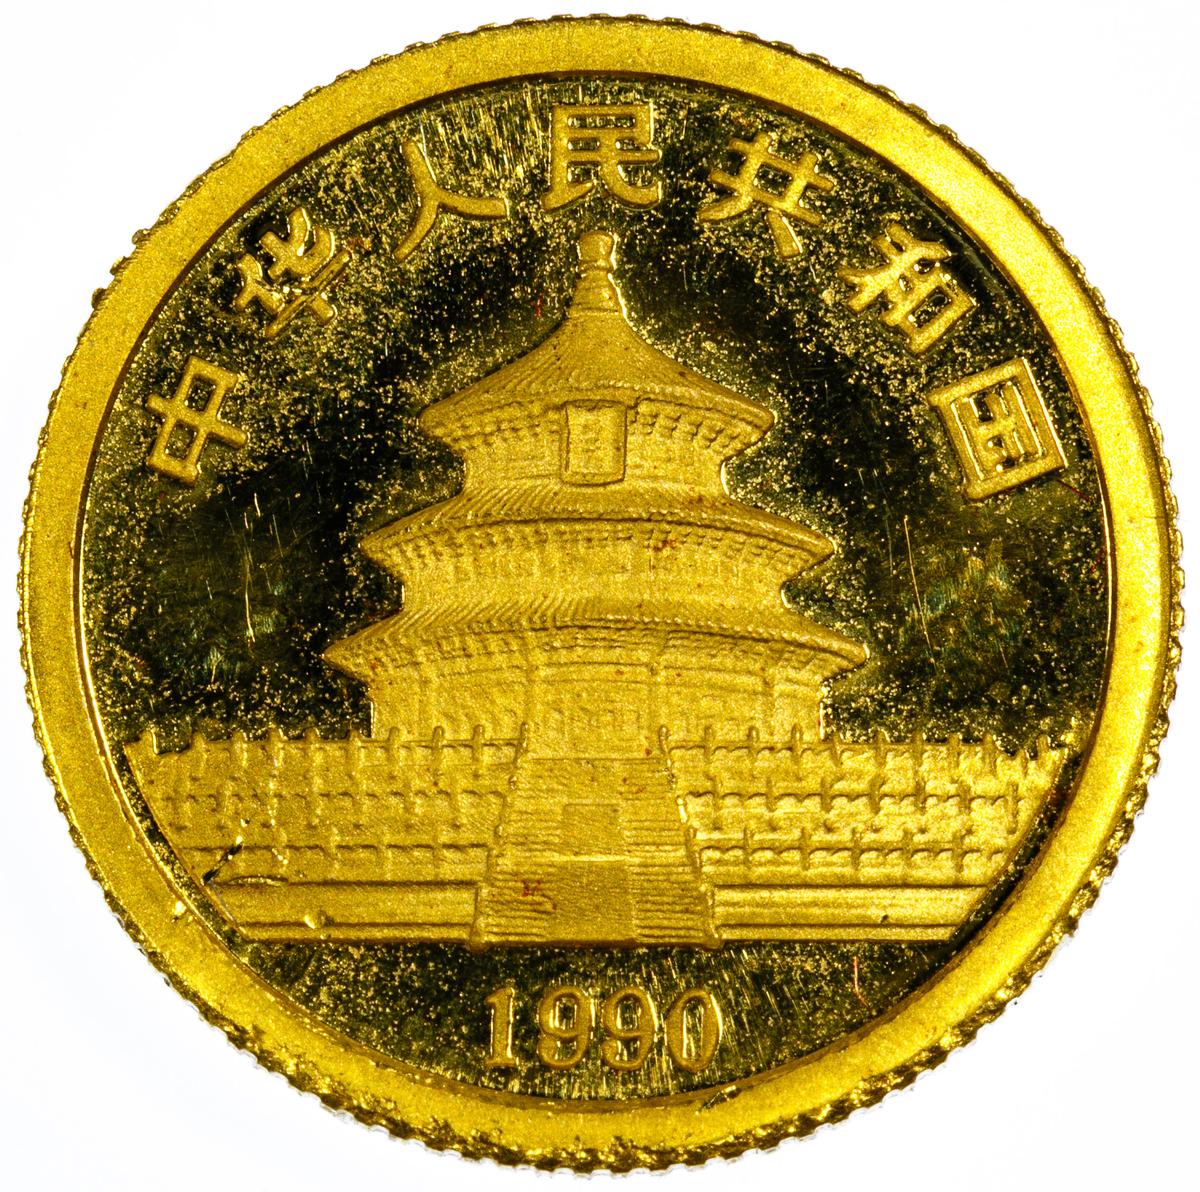 China: 1990 5 Yuan Gold